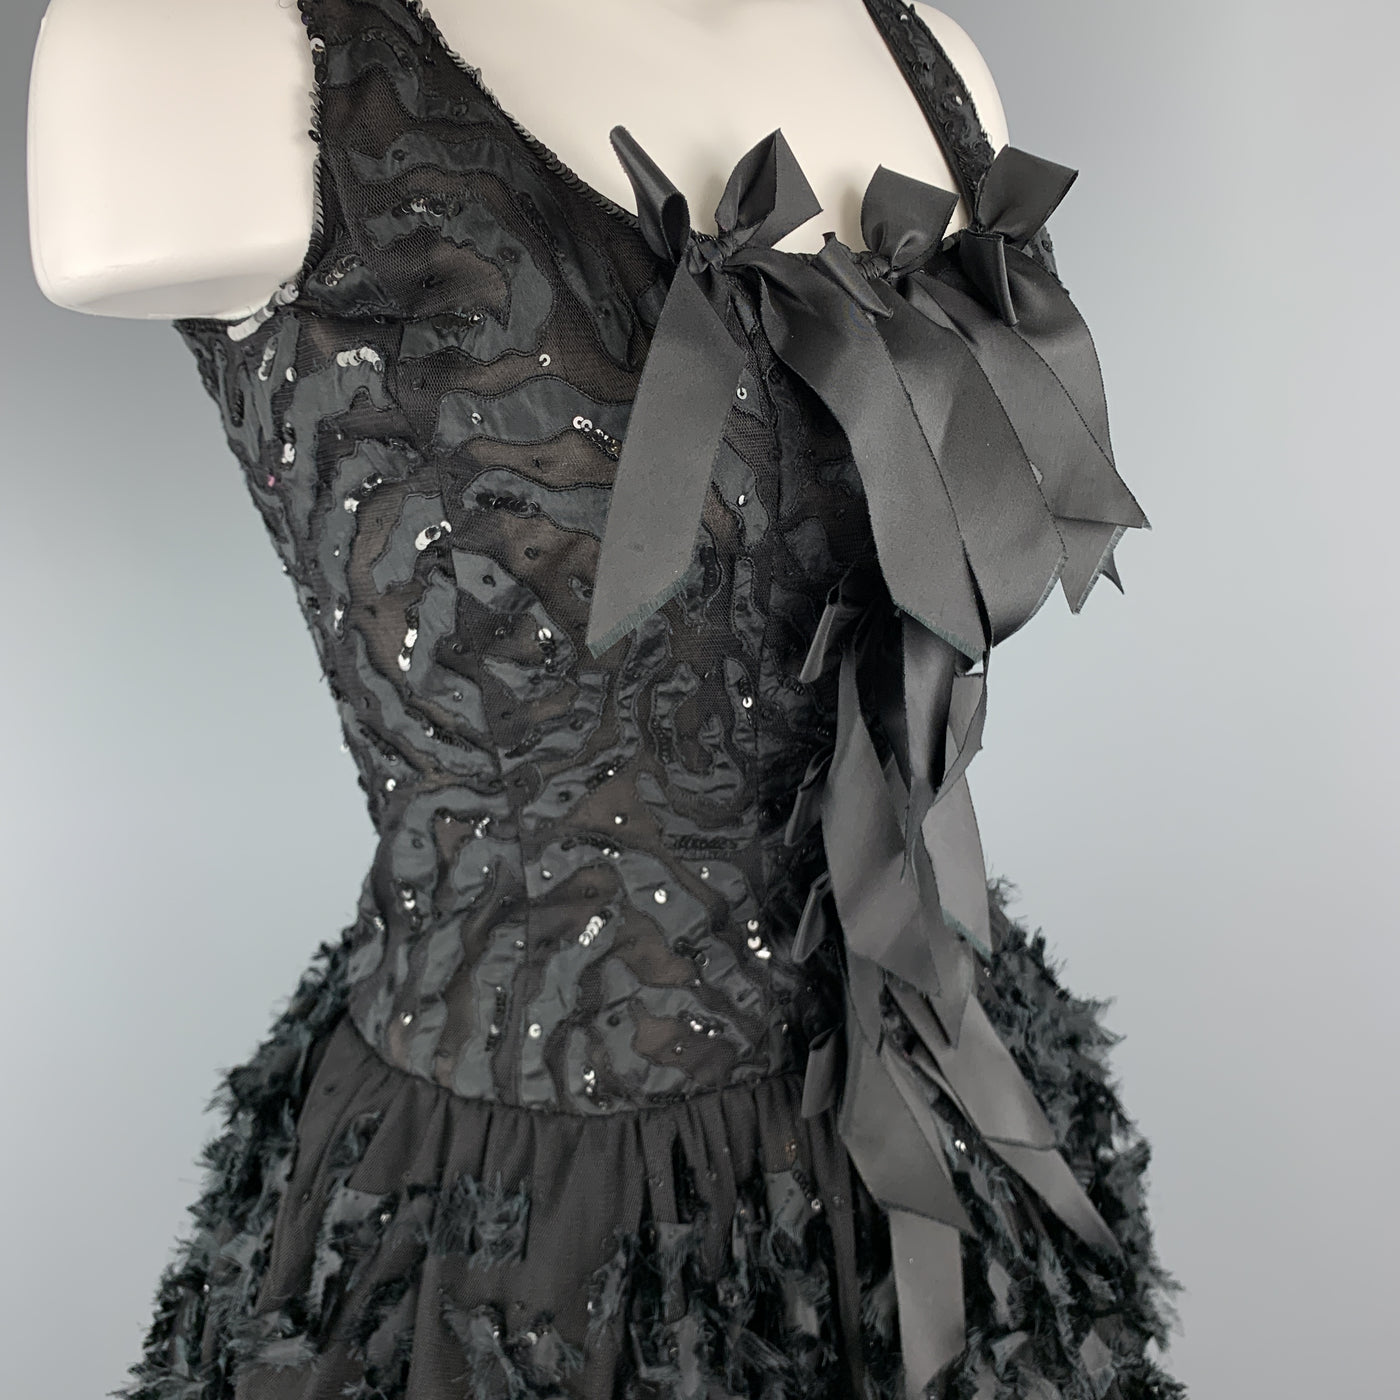 OSCAR DE LA RENTA 6 Black Sequin Mesh Silk Bows Buubble Skirt Cocktail Dress